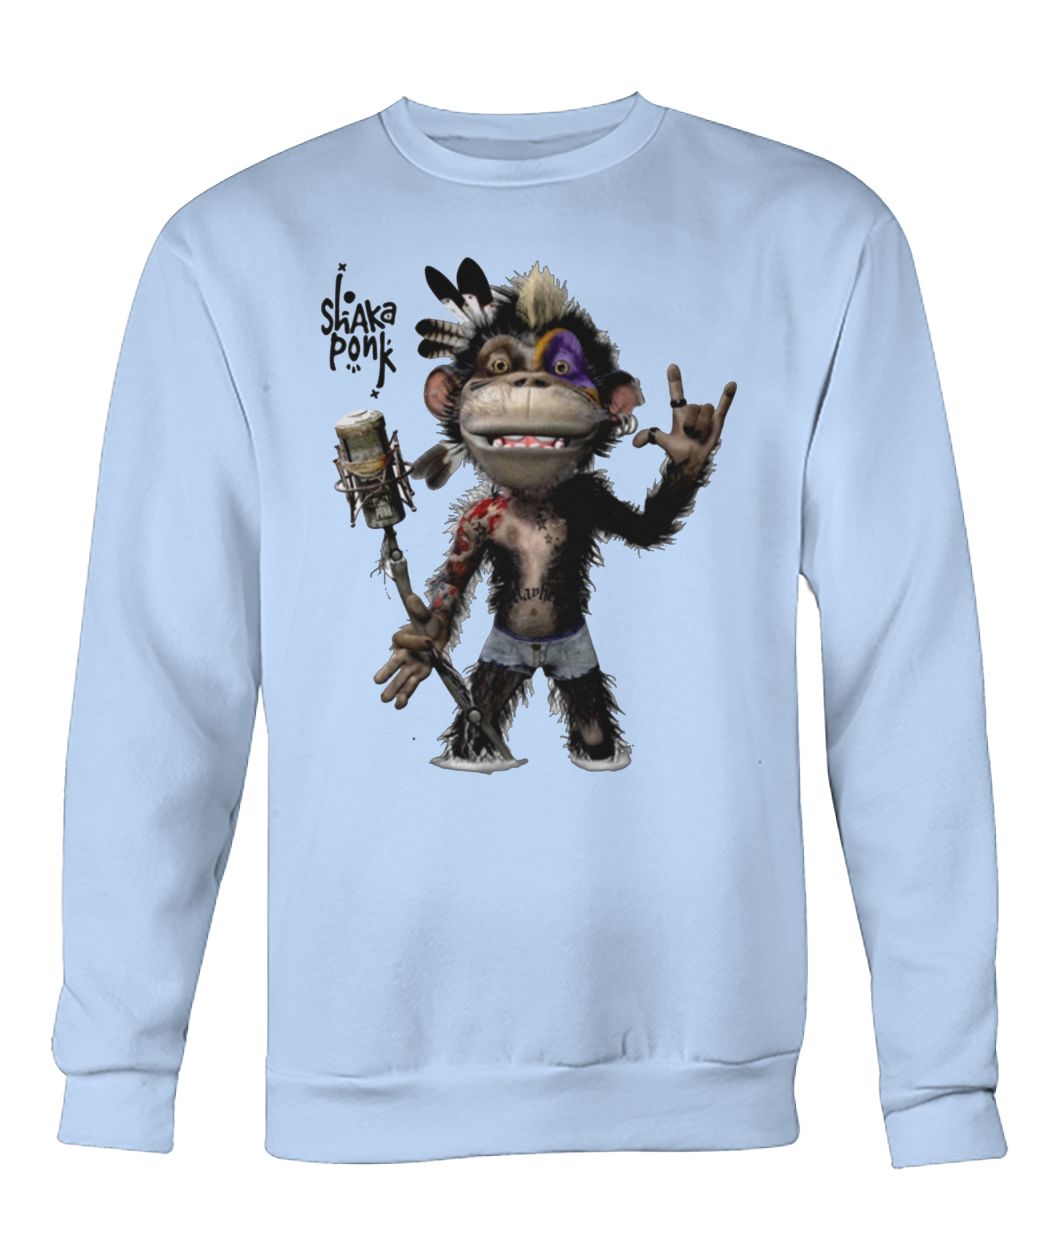 Monkey goz shaka ponk crew neck sweatshirt